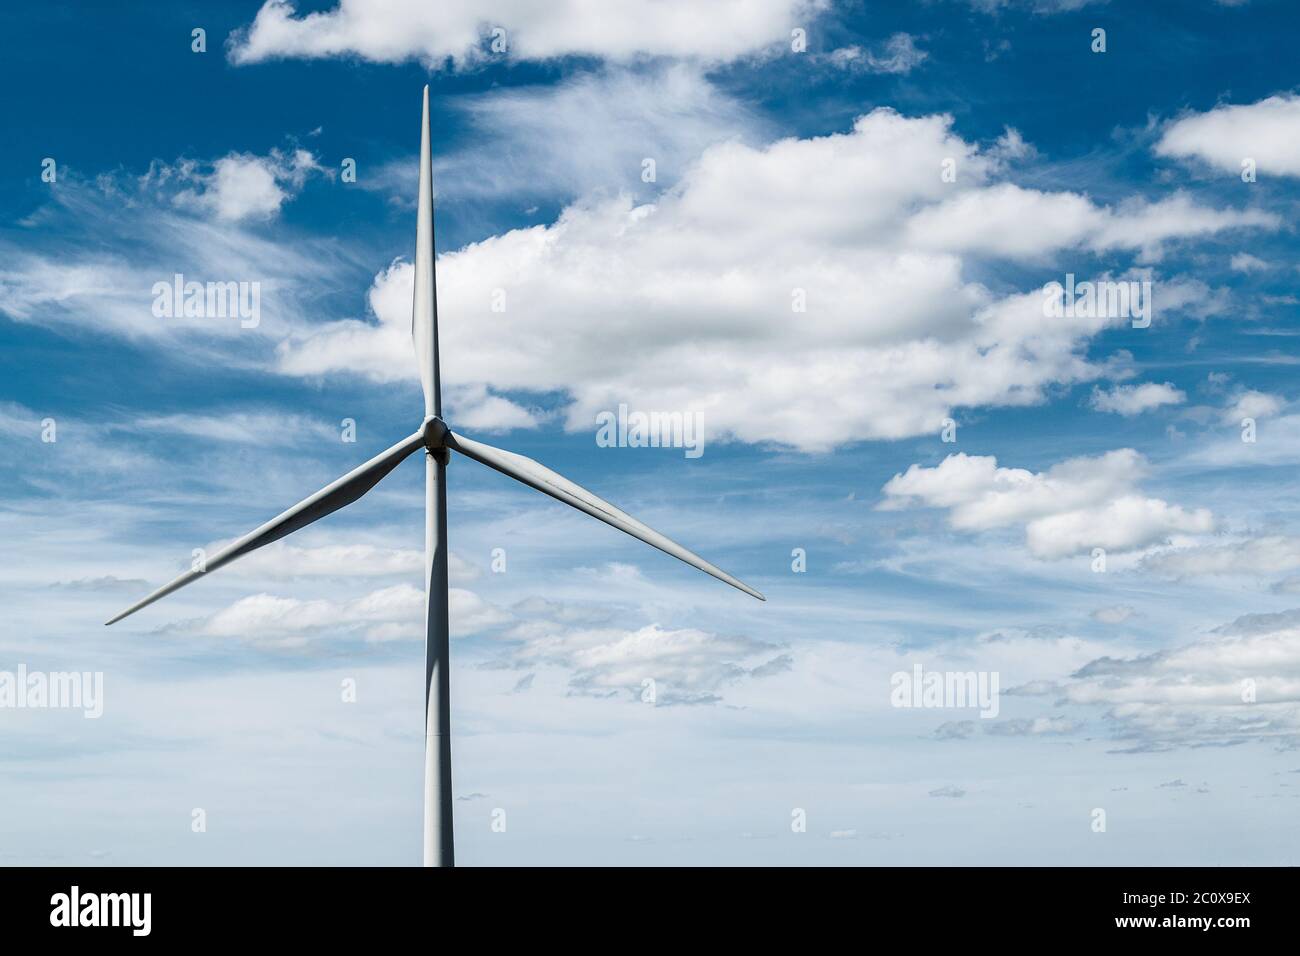 Wind turbine on Whitelee windfarm, Scotland, against deep blue sky. Stock Photo